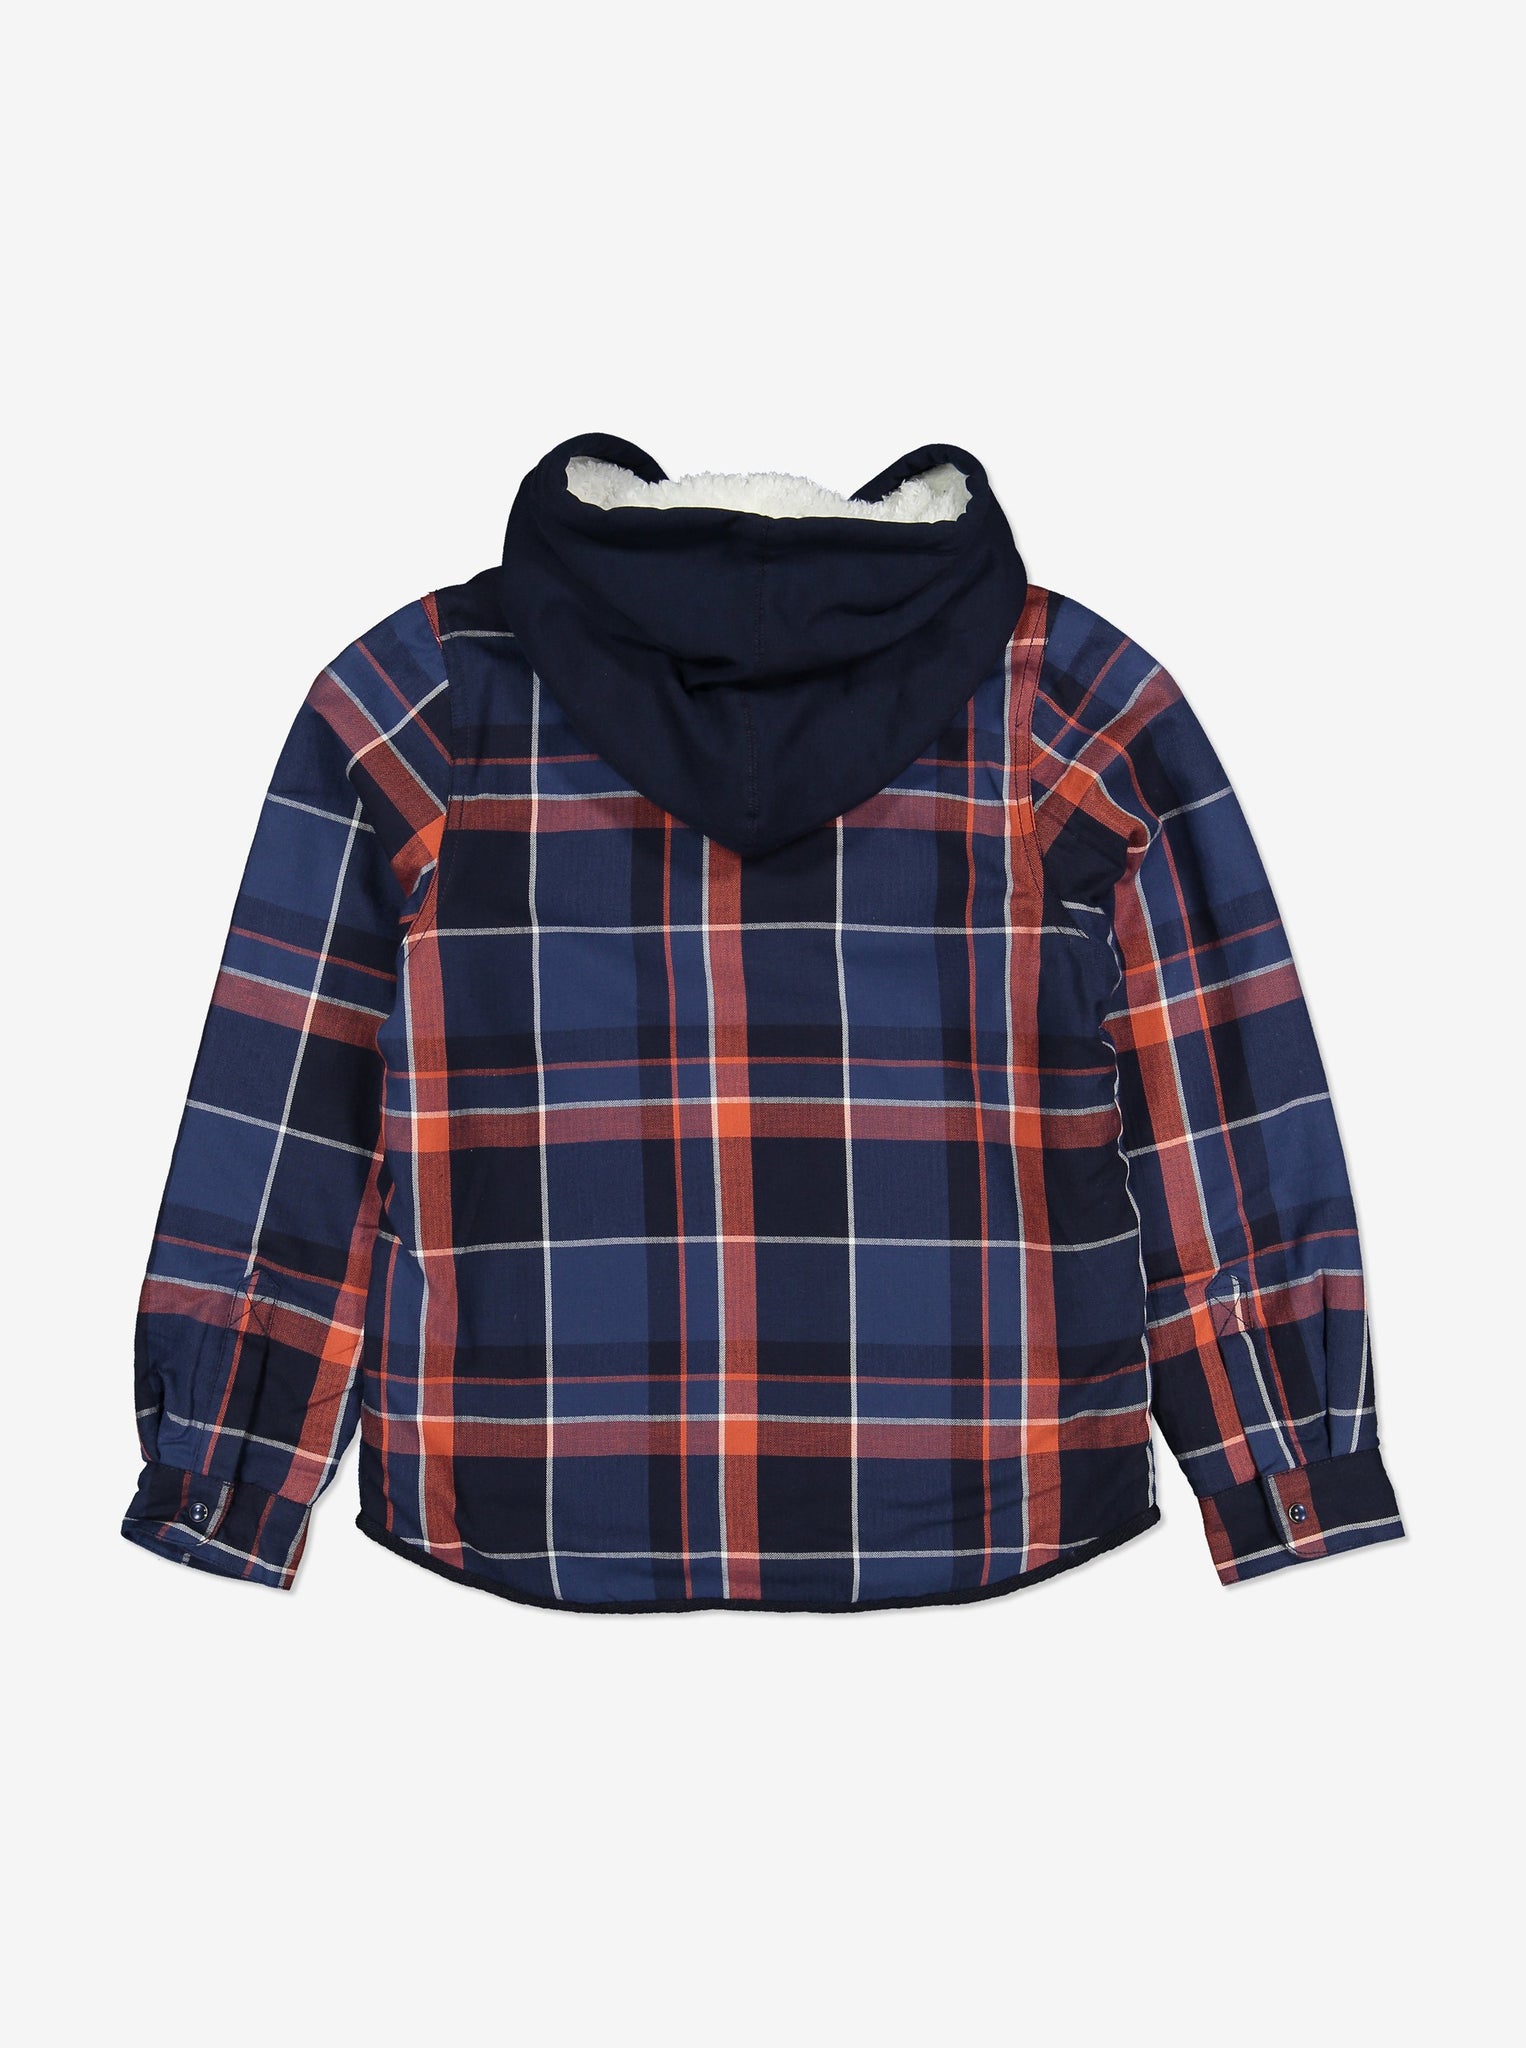 Fleece Lined Kids Shirt-Unisex-1-12y-Navy